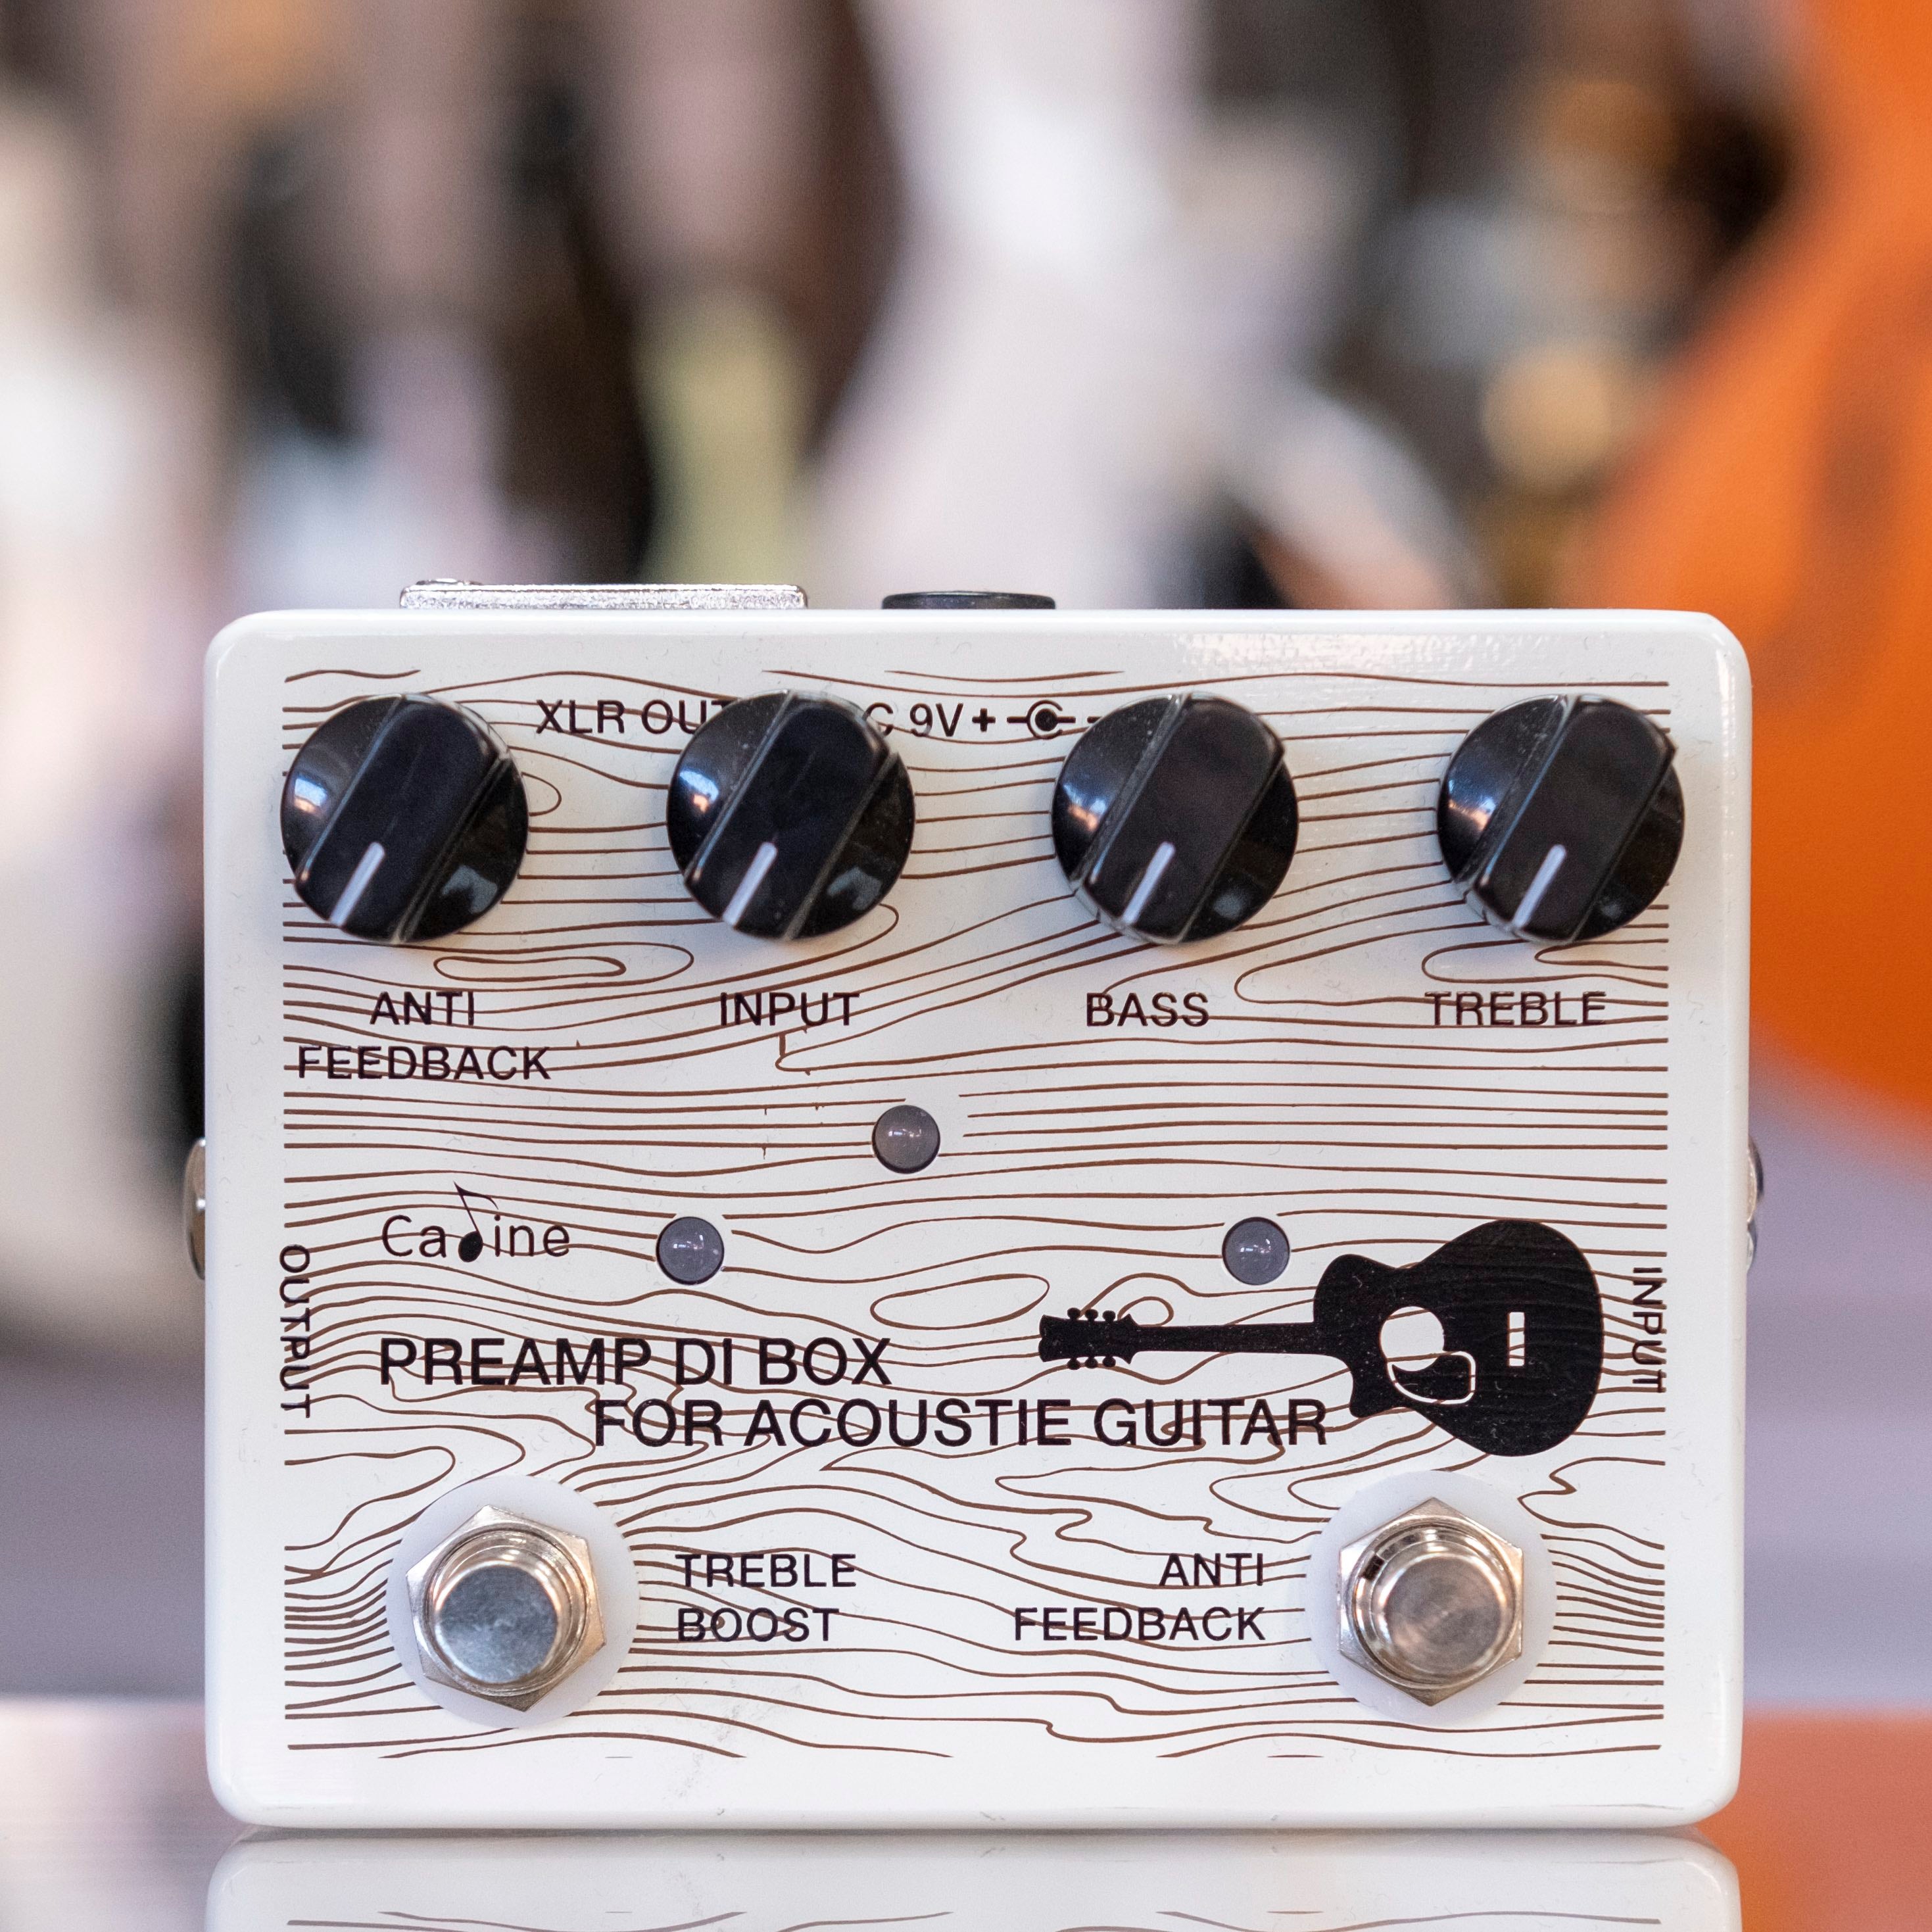 Caline CP-67 DI Box for Acoustic Guitars